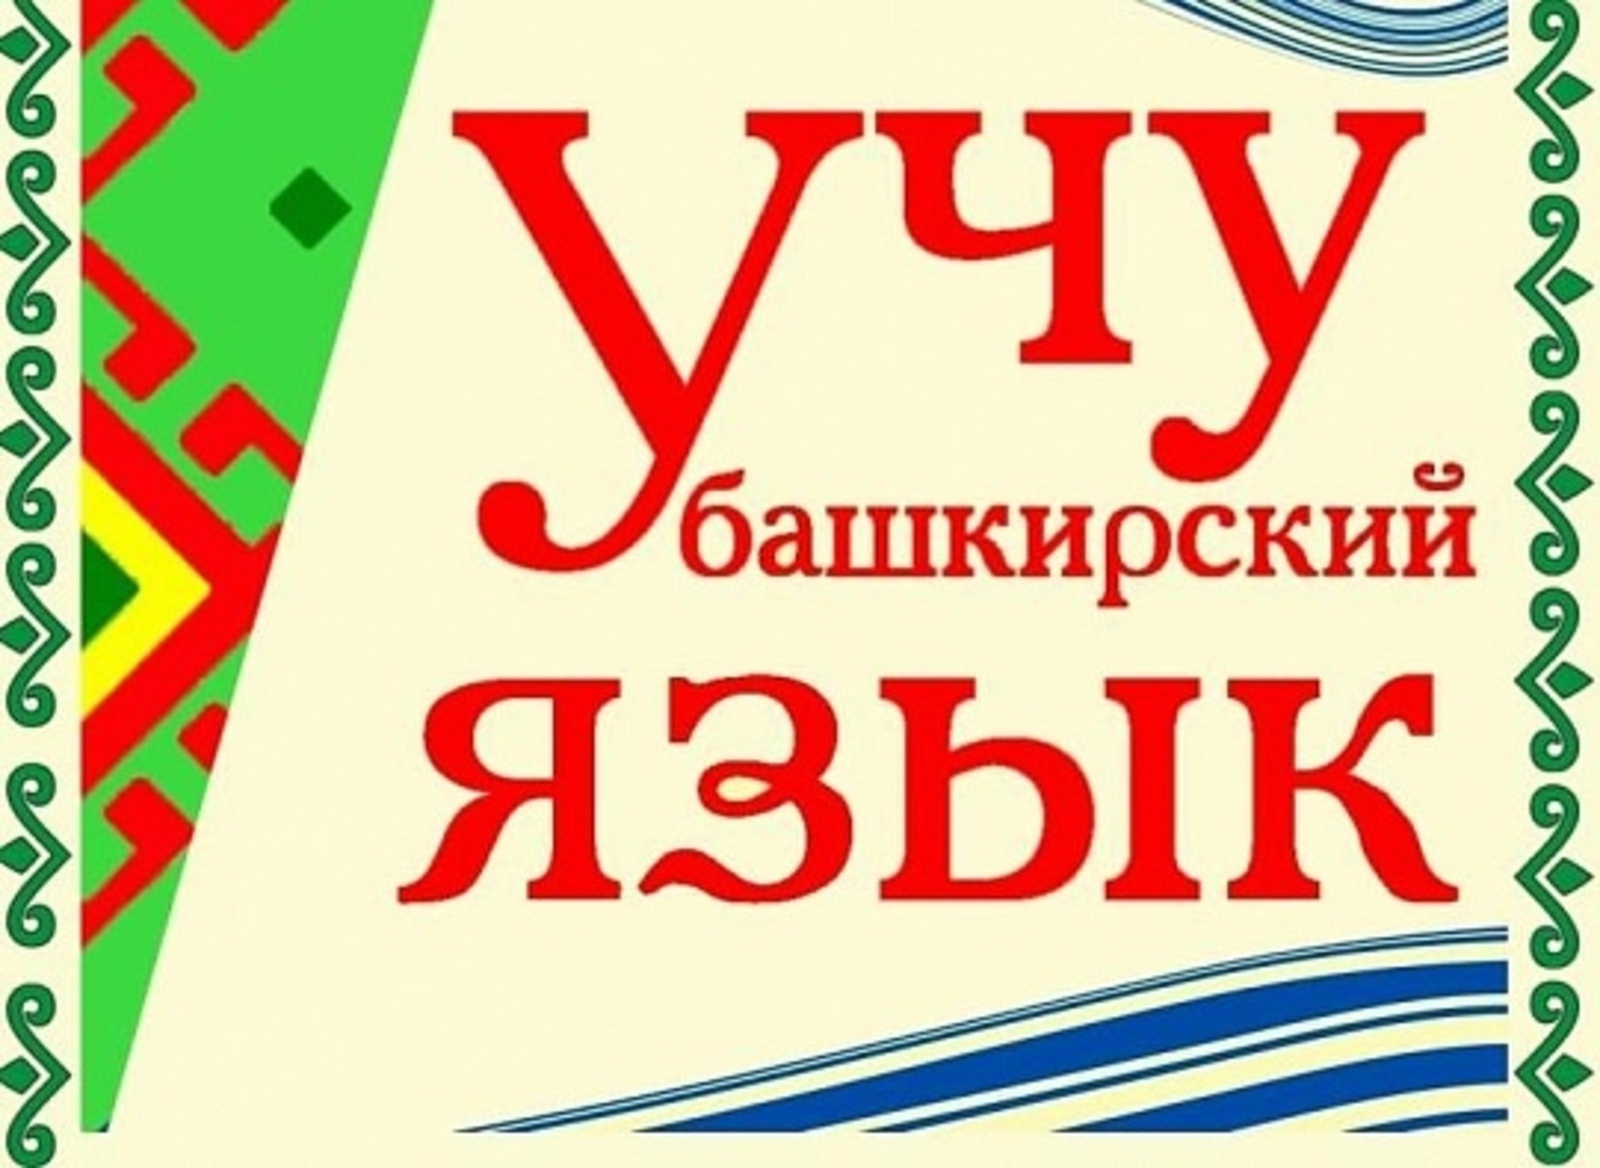 В Благоварском районе для населения проводят курсы по башкирскому языку